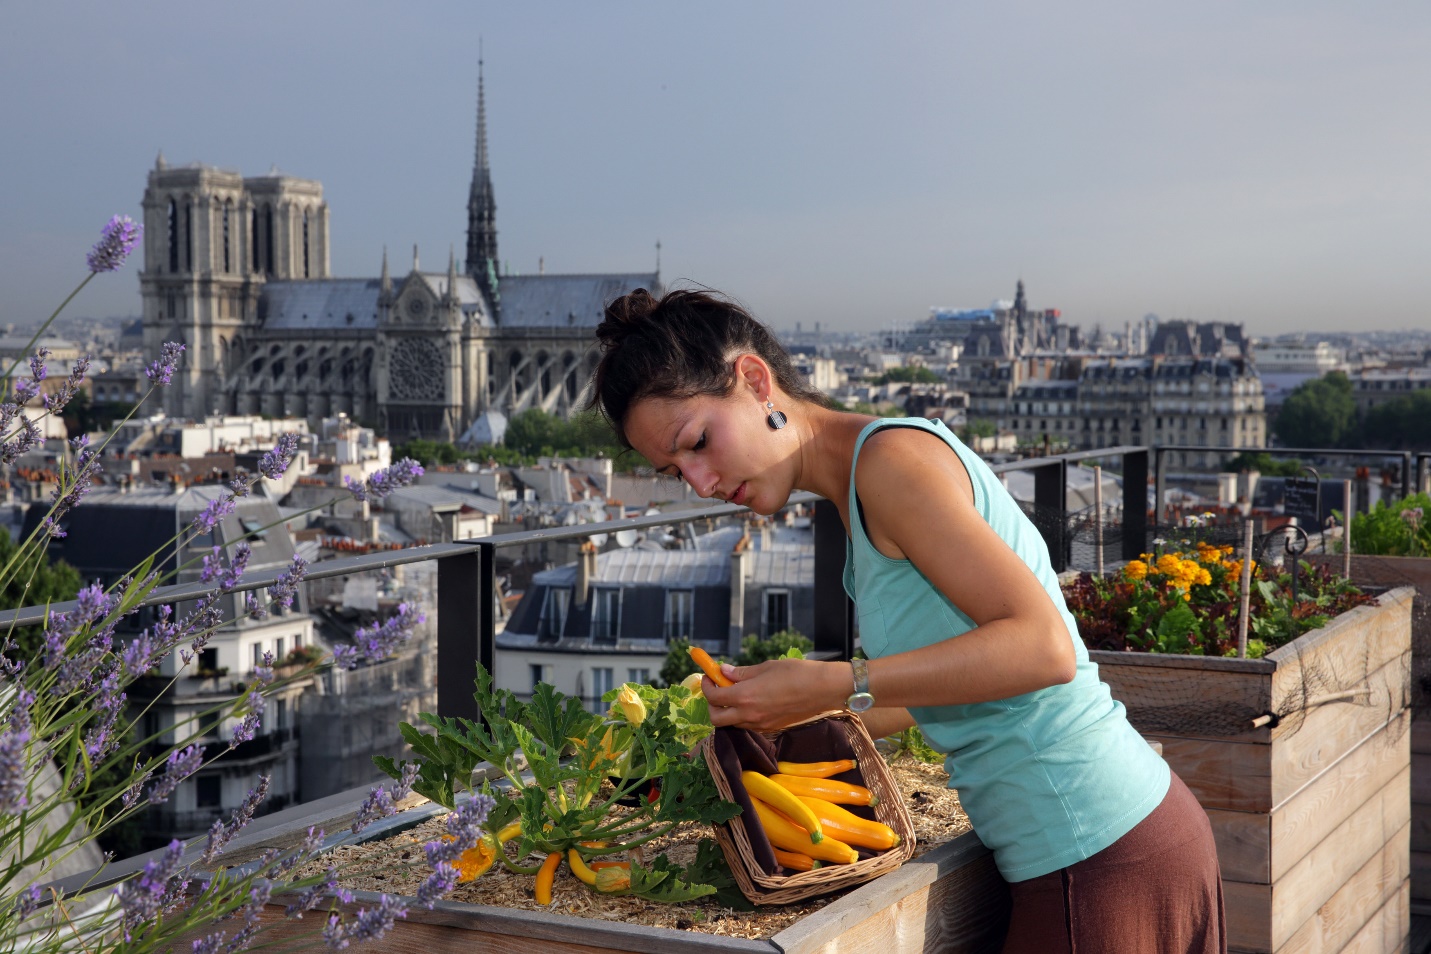 Một người phụ nữ chăm bón rau trên trang trại trên sân thượng trong môi trường đô thị 